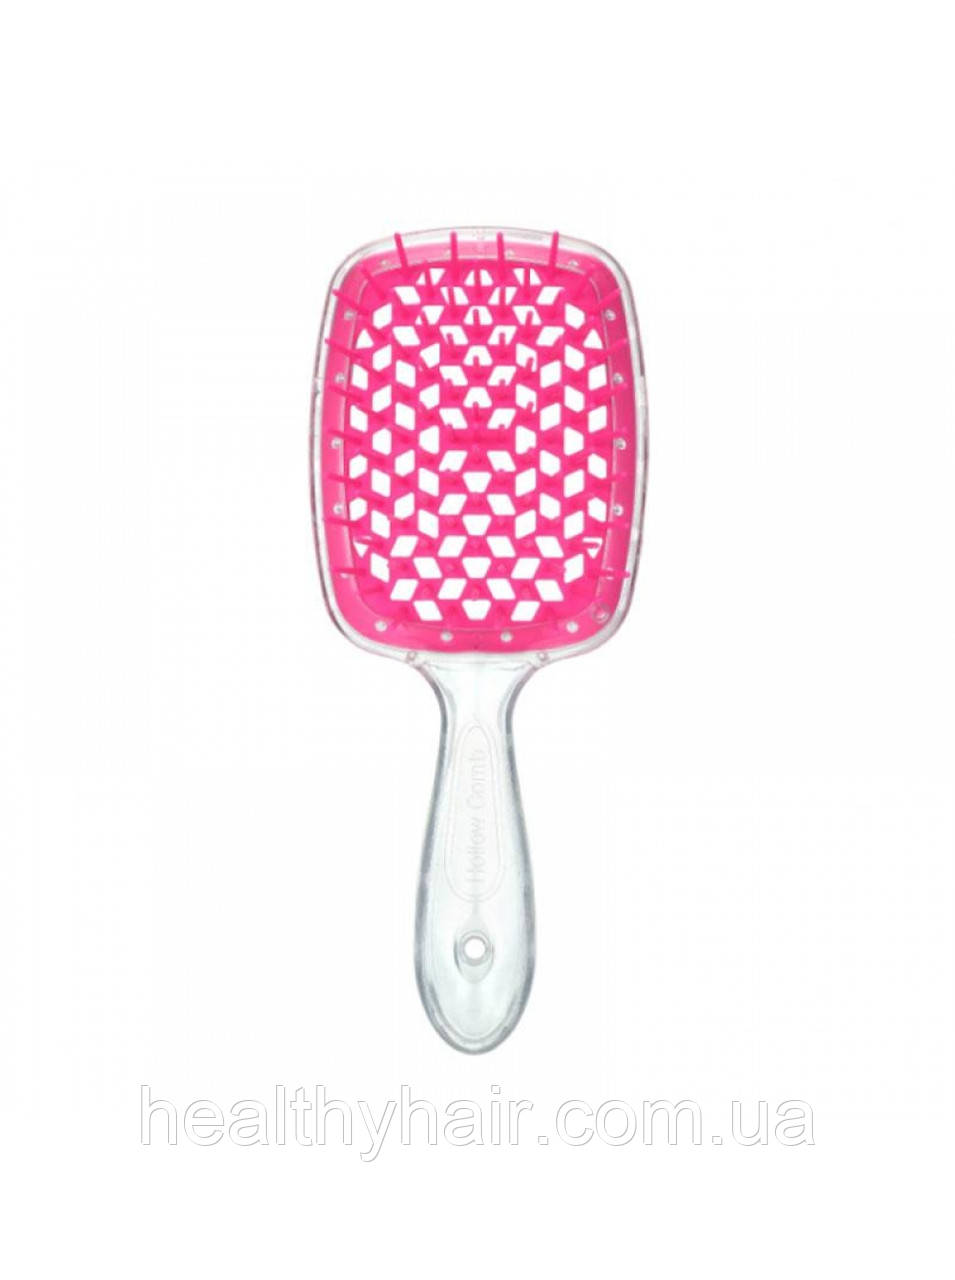 Janeke  Продувна широка щітка для укладання волосся та сушки феном Superbrush (біла із вишневими зубчиками)